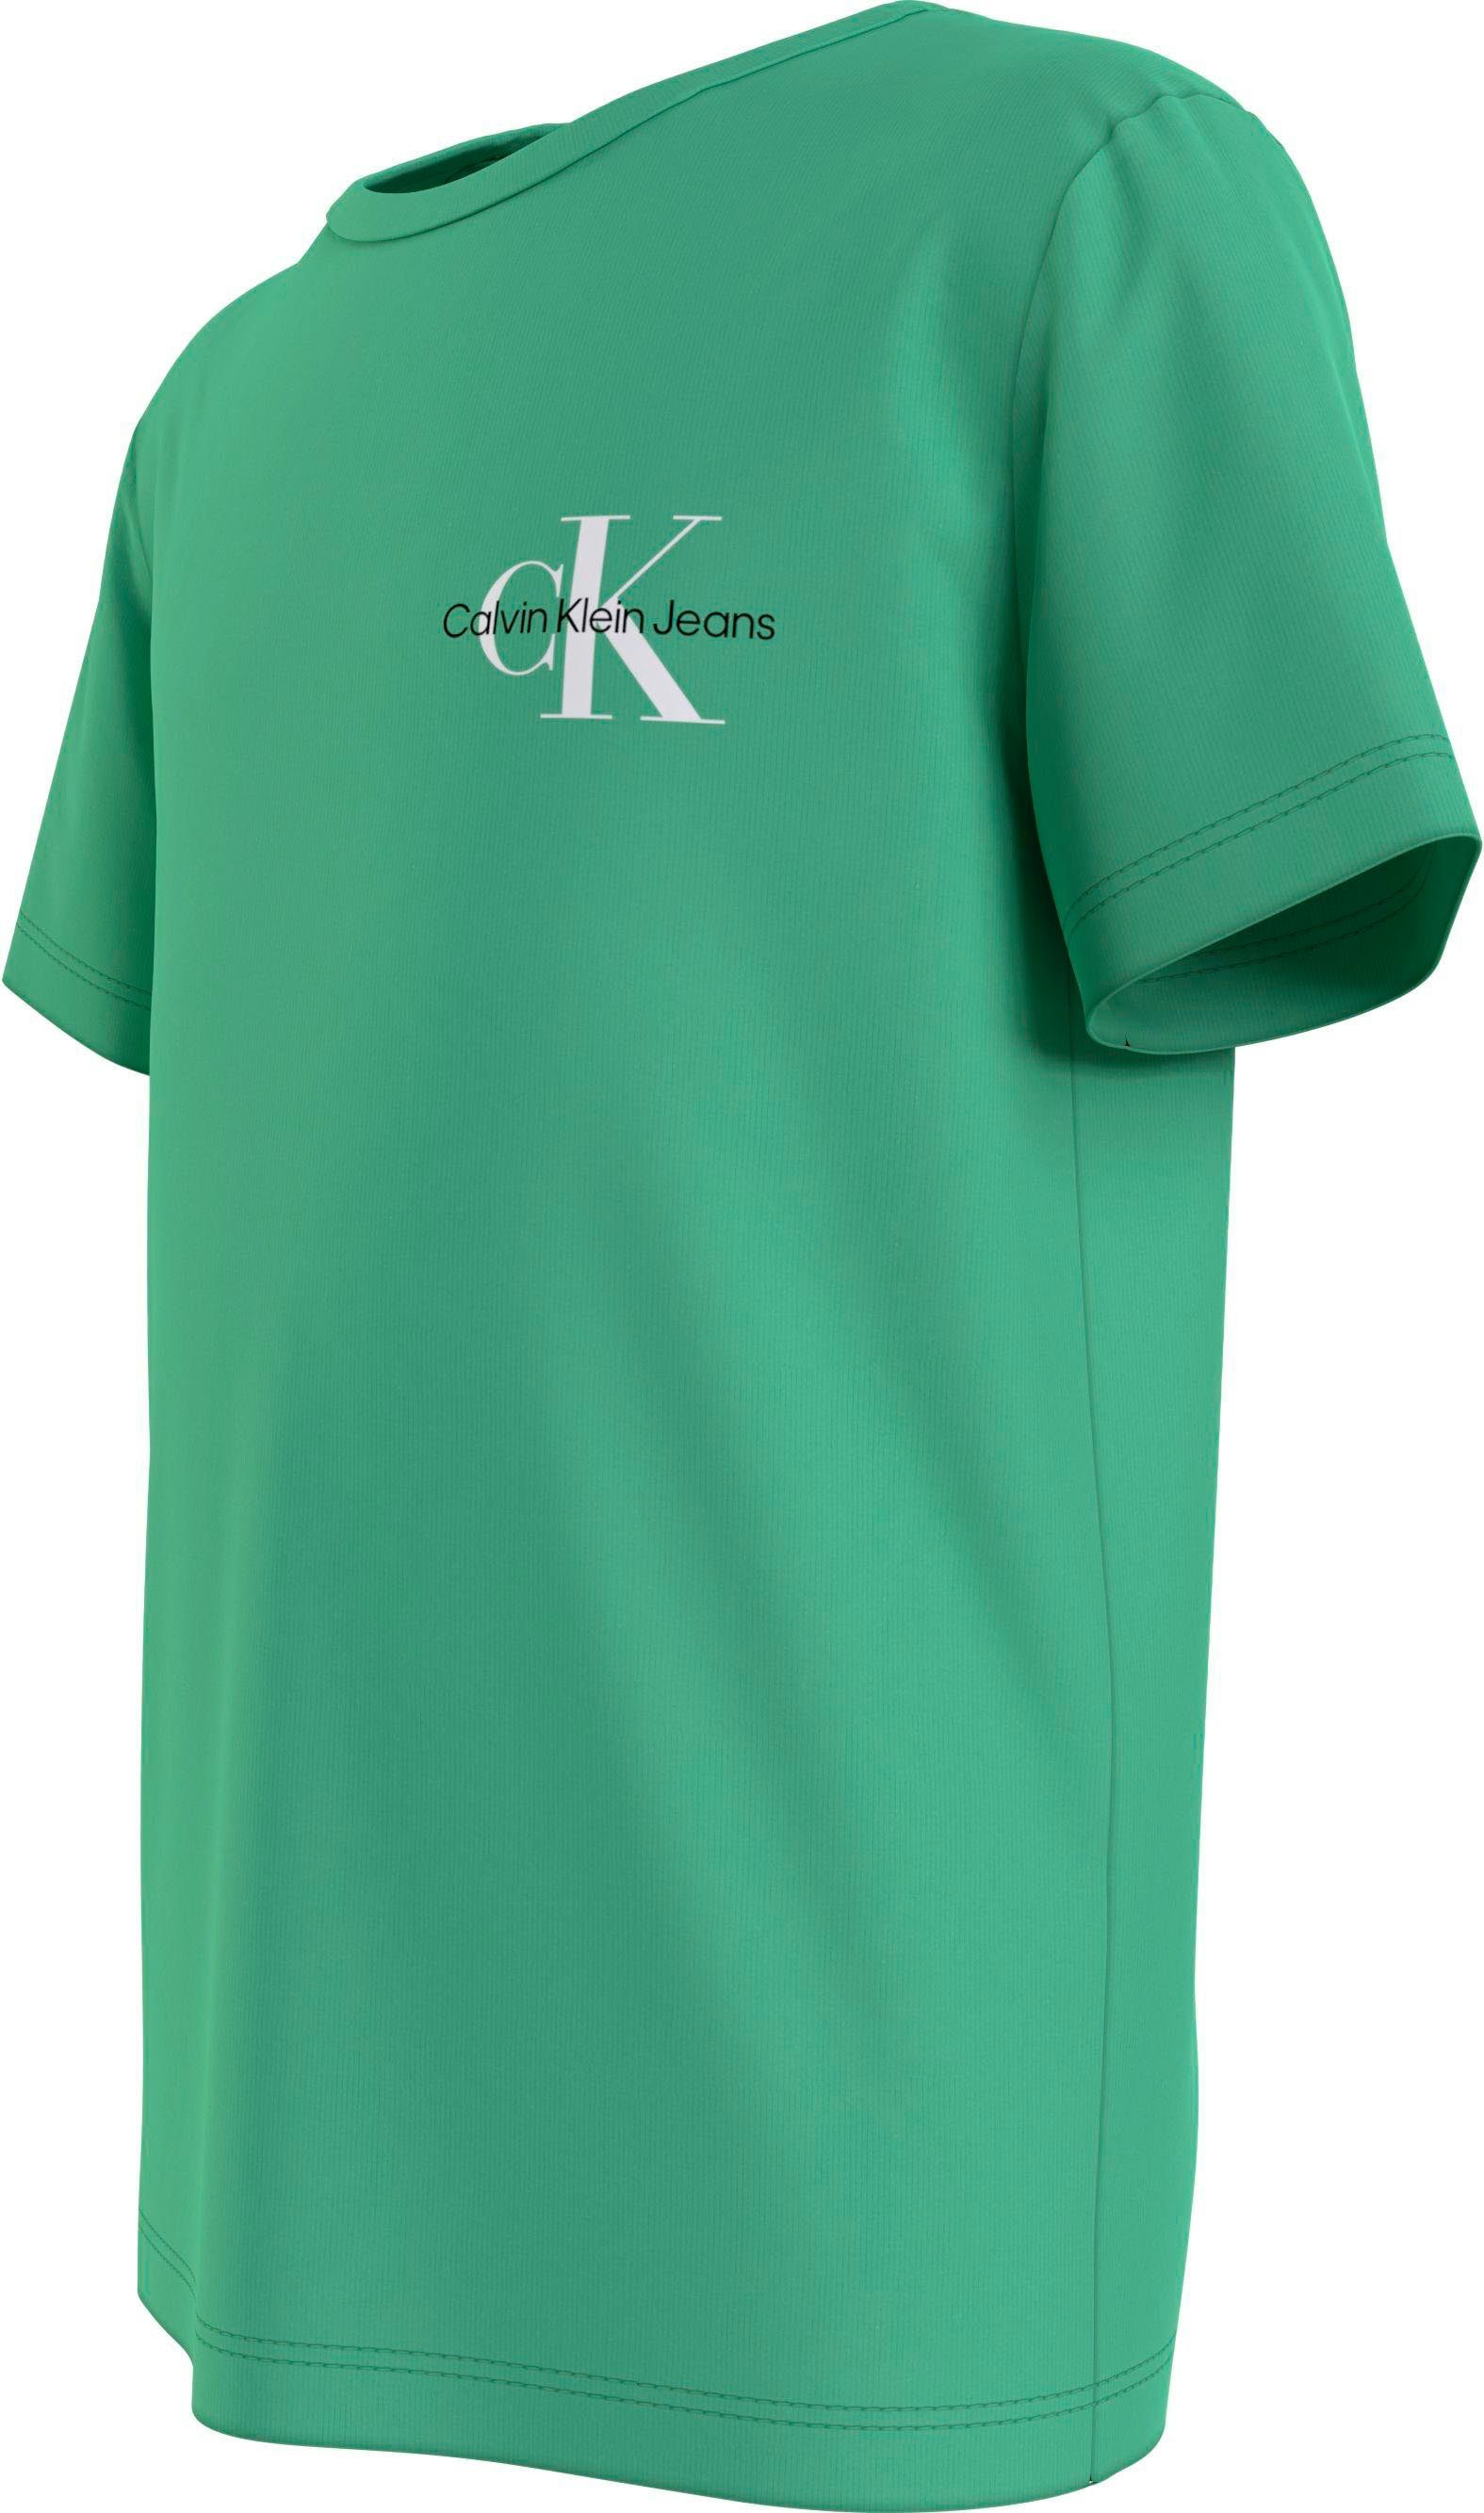 Klein mit Rundhalsausschnitt T-Shirt grün Calvin Jeans